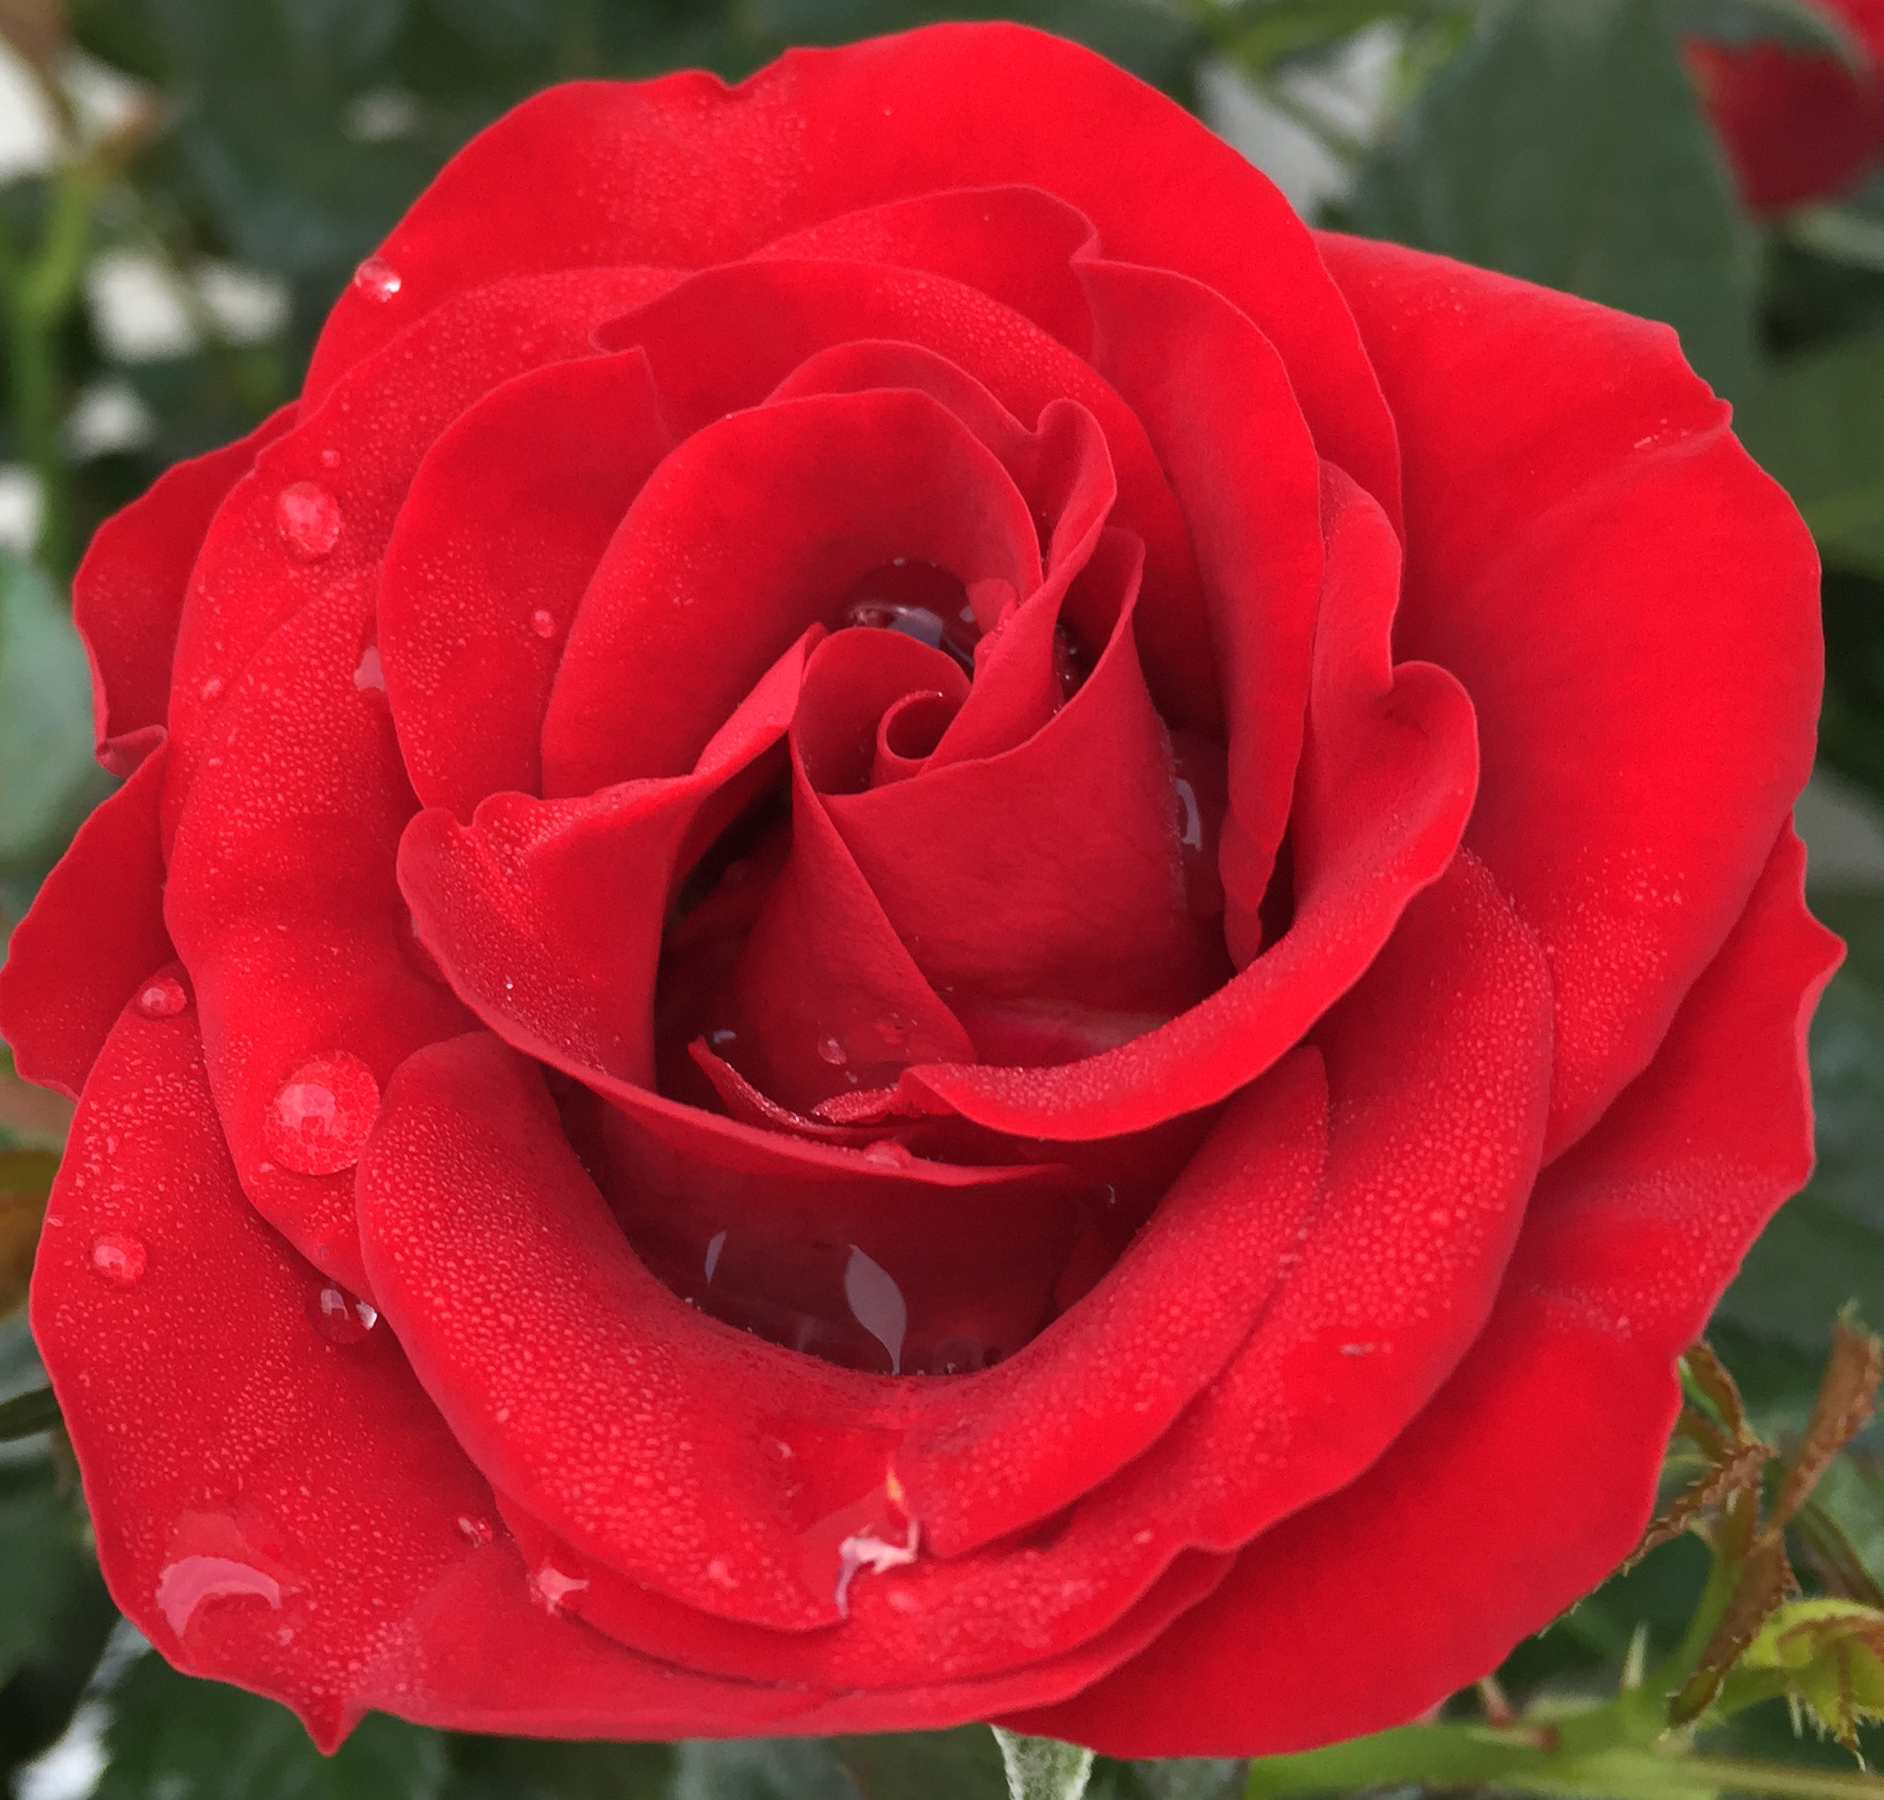 New mini roses from Roses Forever 2017 – Roses Forever
